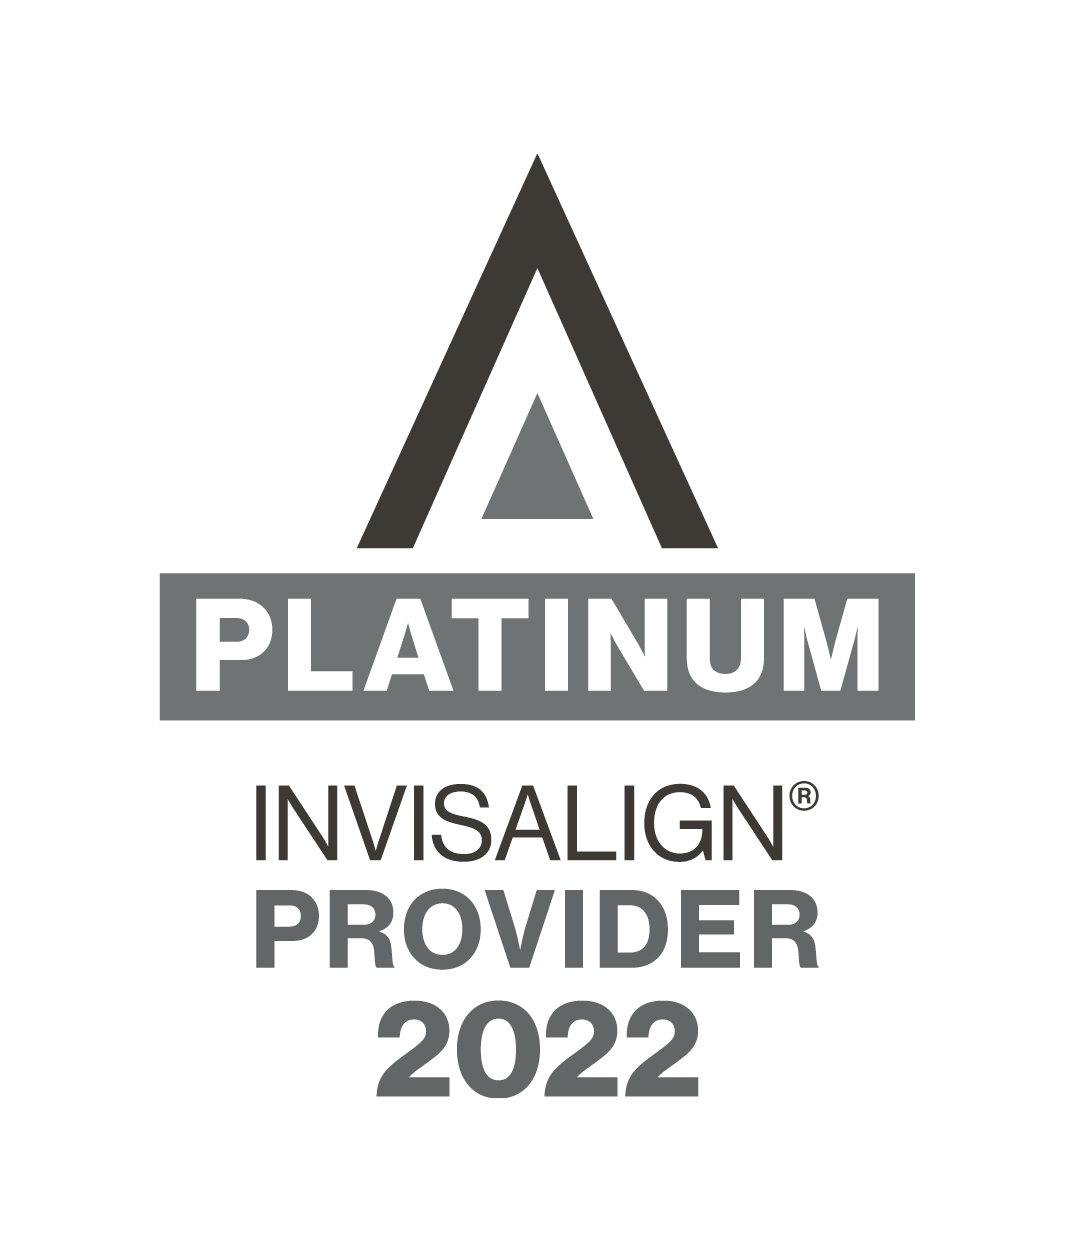 INVIS_PLATINUM_2022